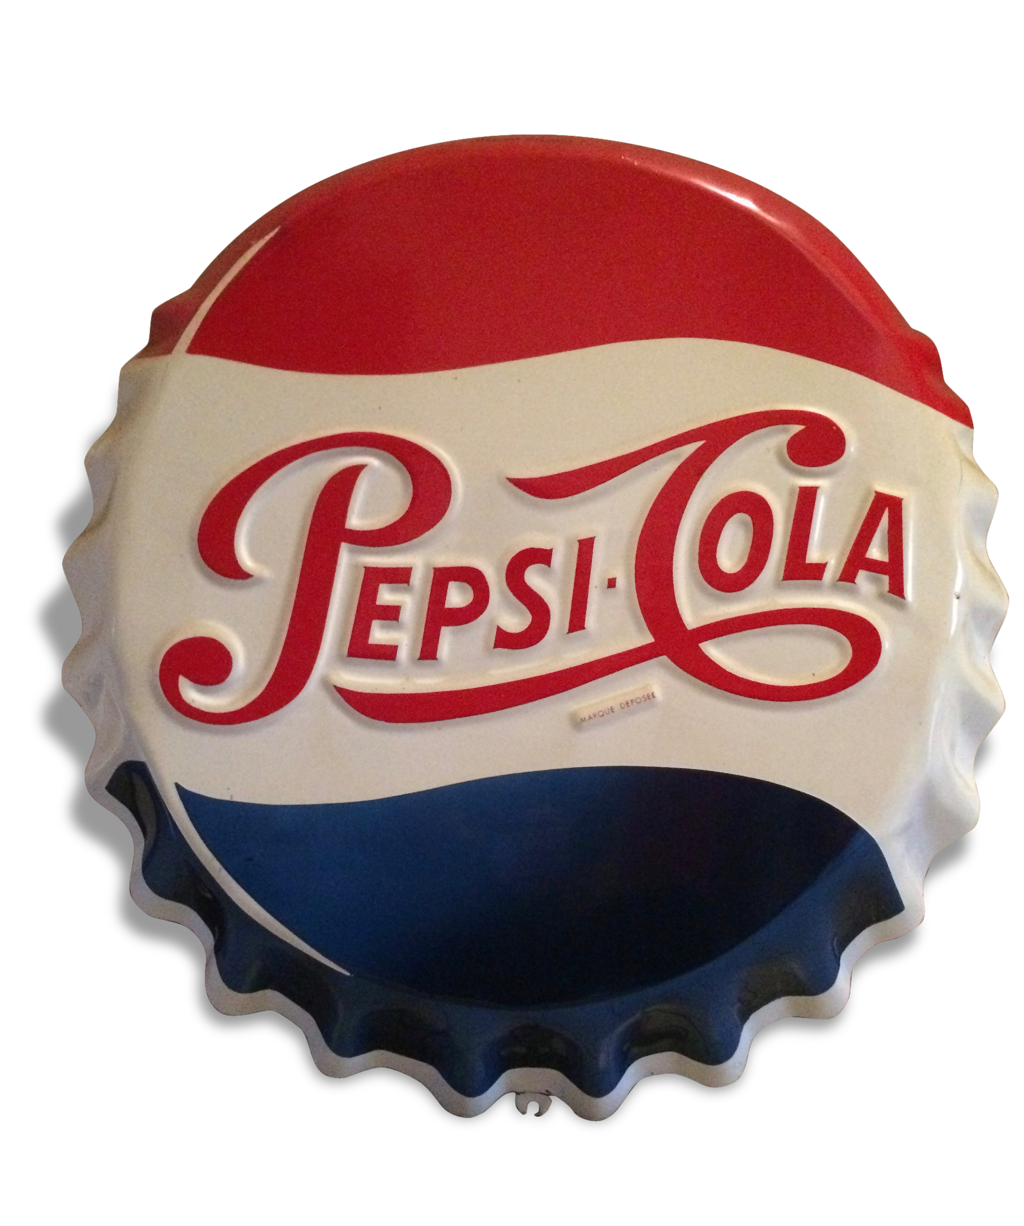 Plaque émaillée Pepsi Cola - Rare